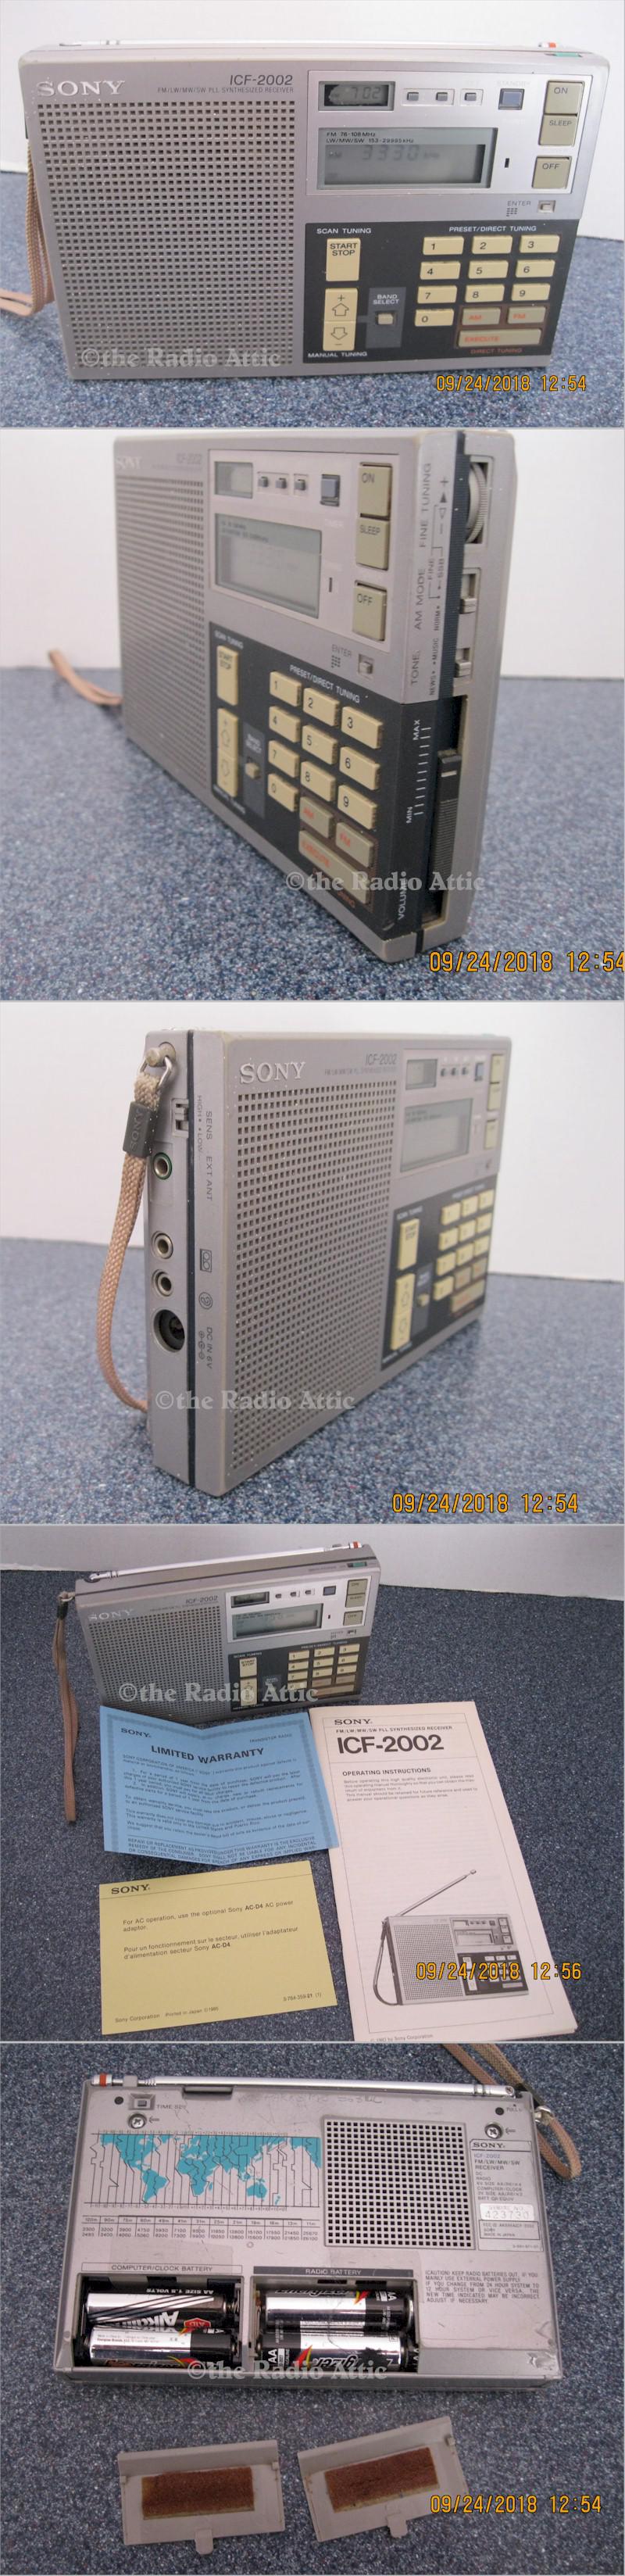 Sony ICF-2002 AM/FM/SW Portable